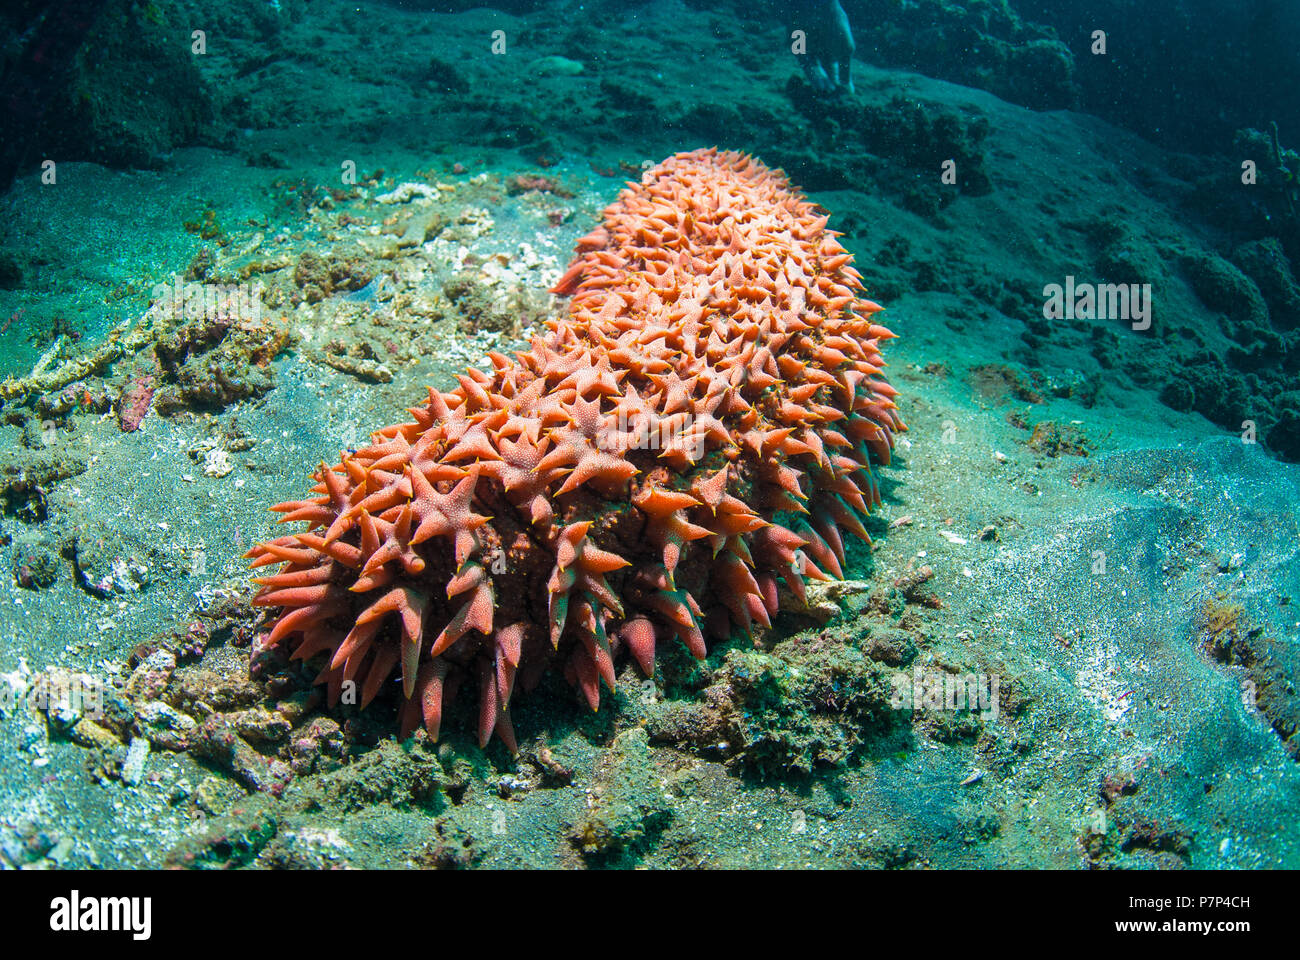 Bright red sea cucumber (Holothuroidea), Bali, Indonesia Stock Photo